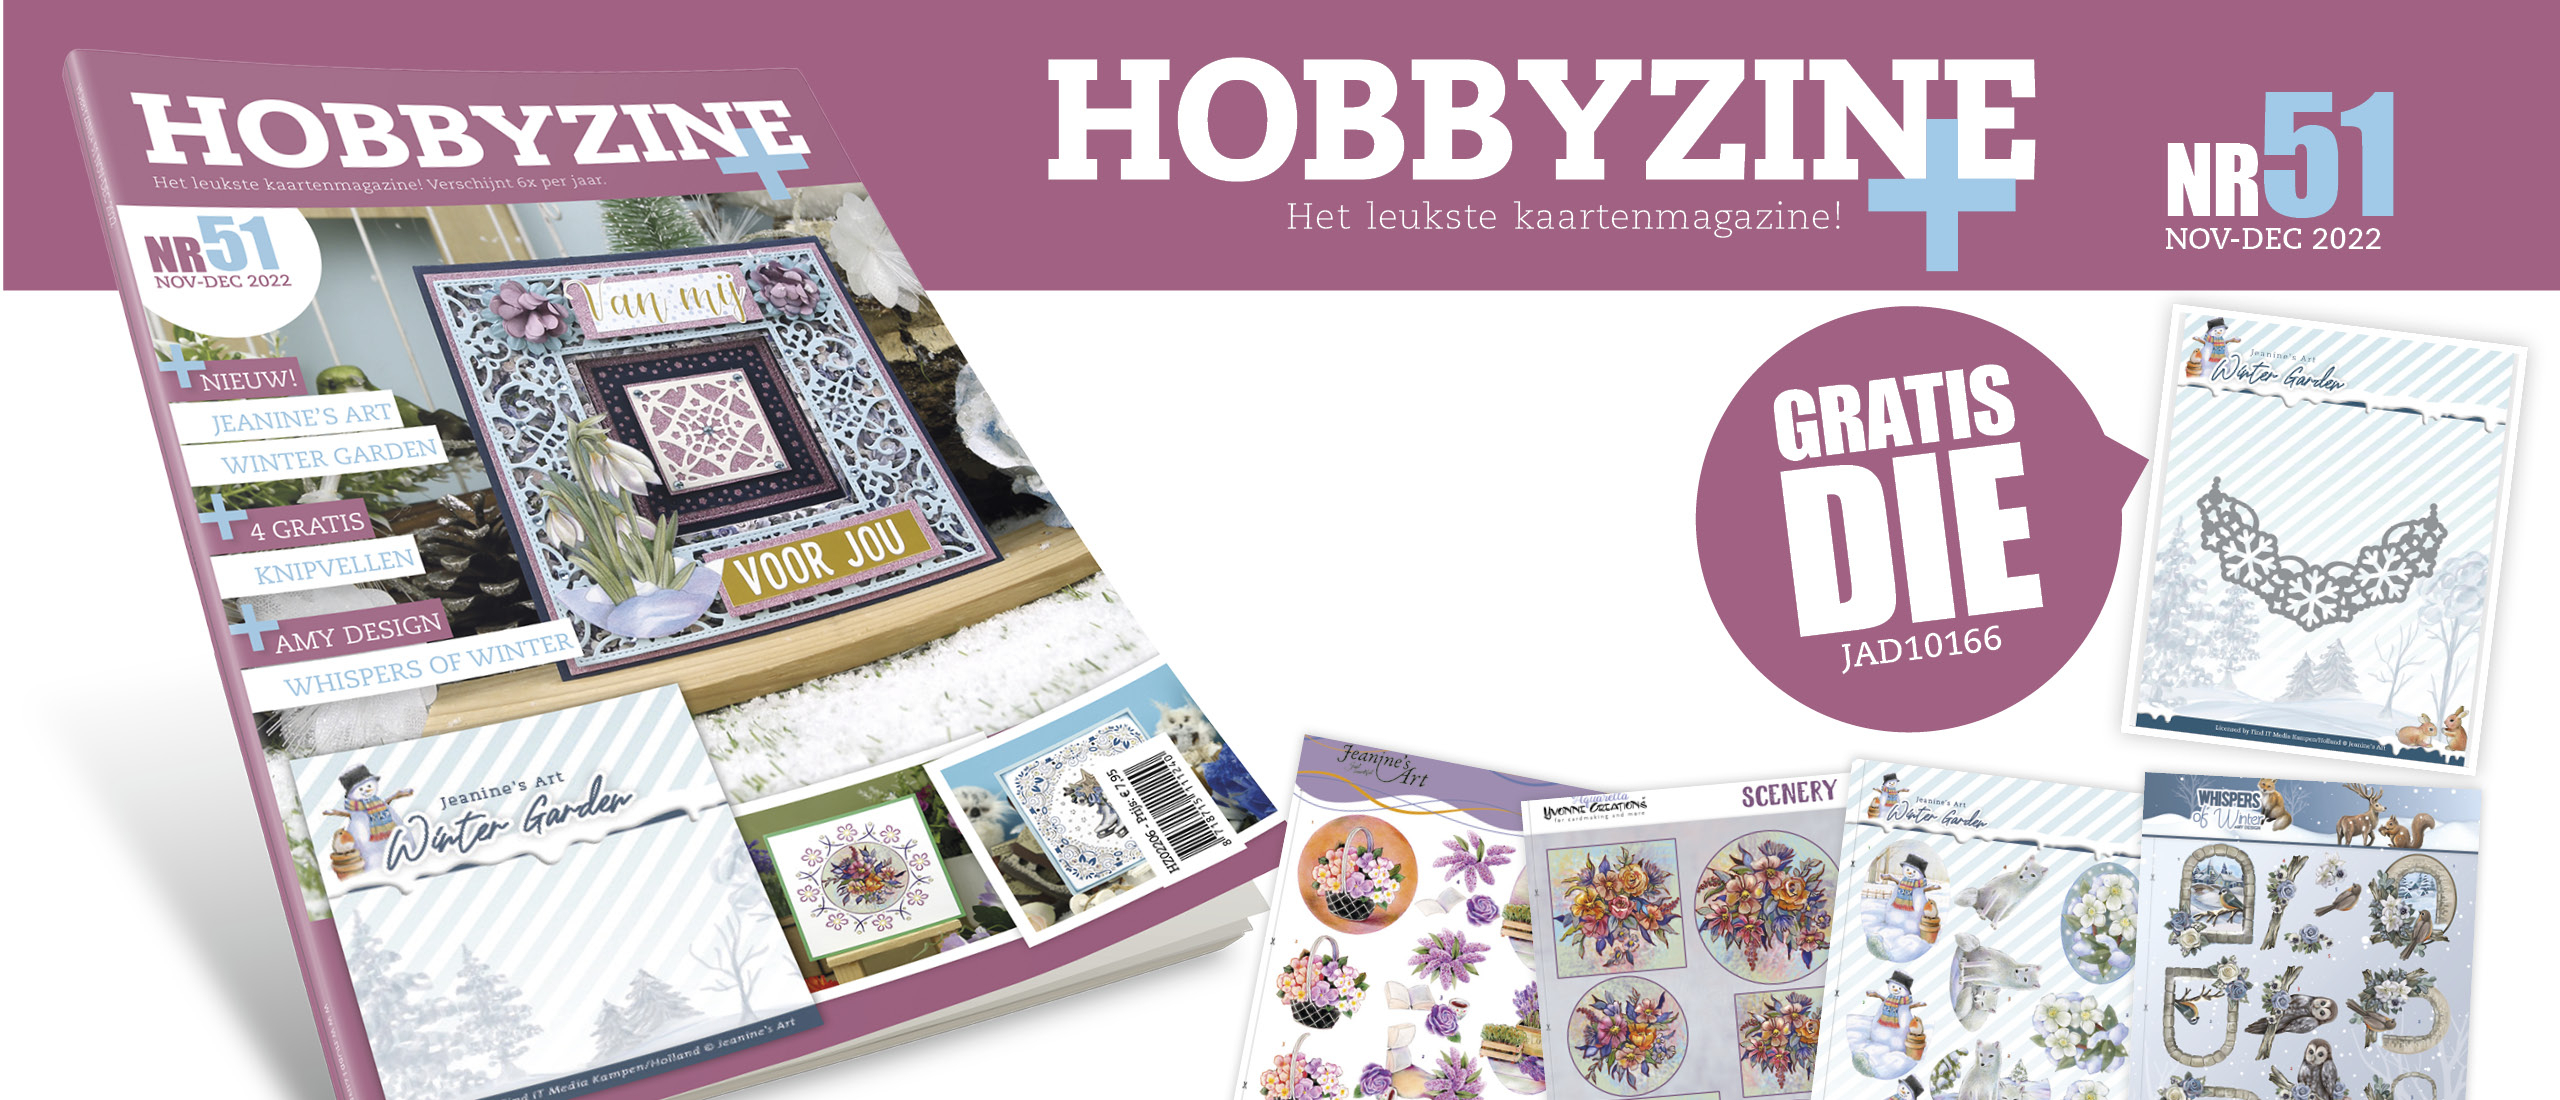 Hobbyzine 51 is nu in de winkel verkrijgbaar!